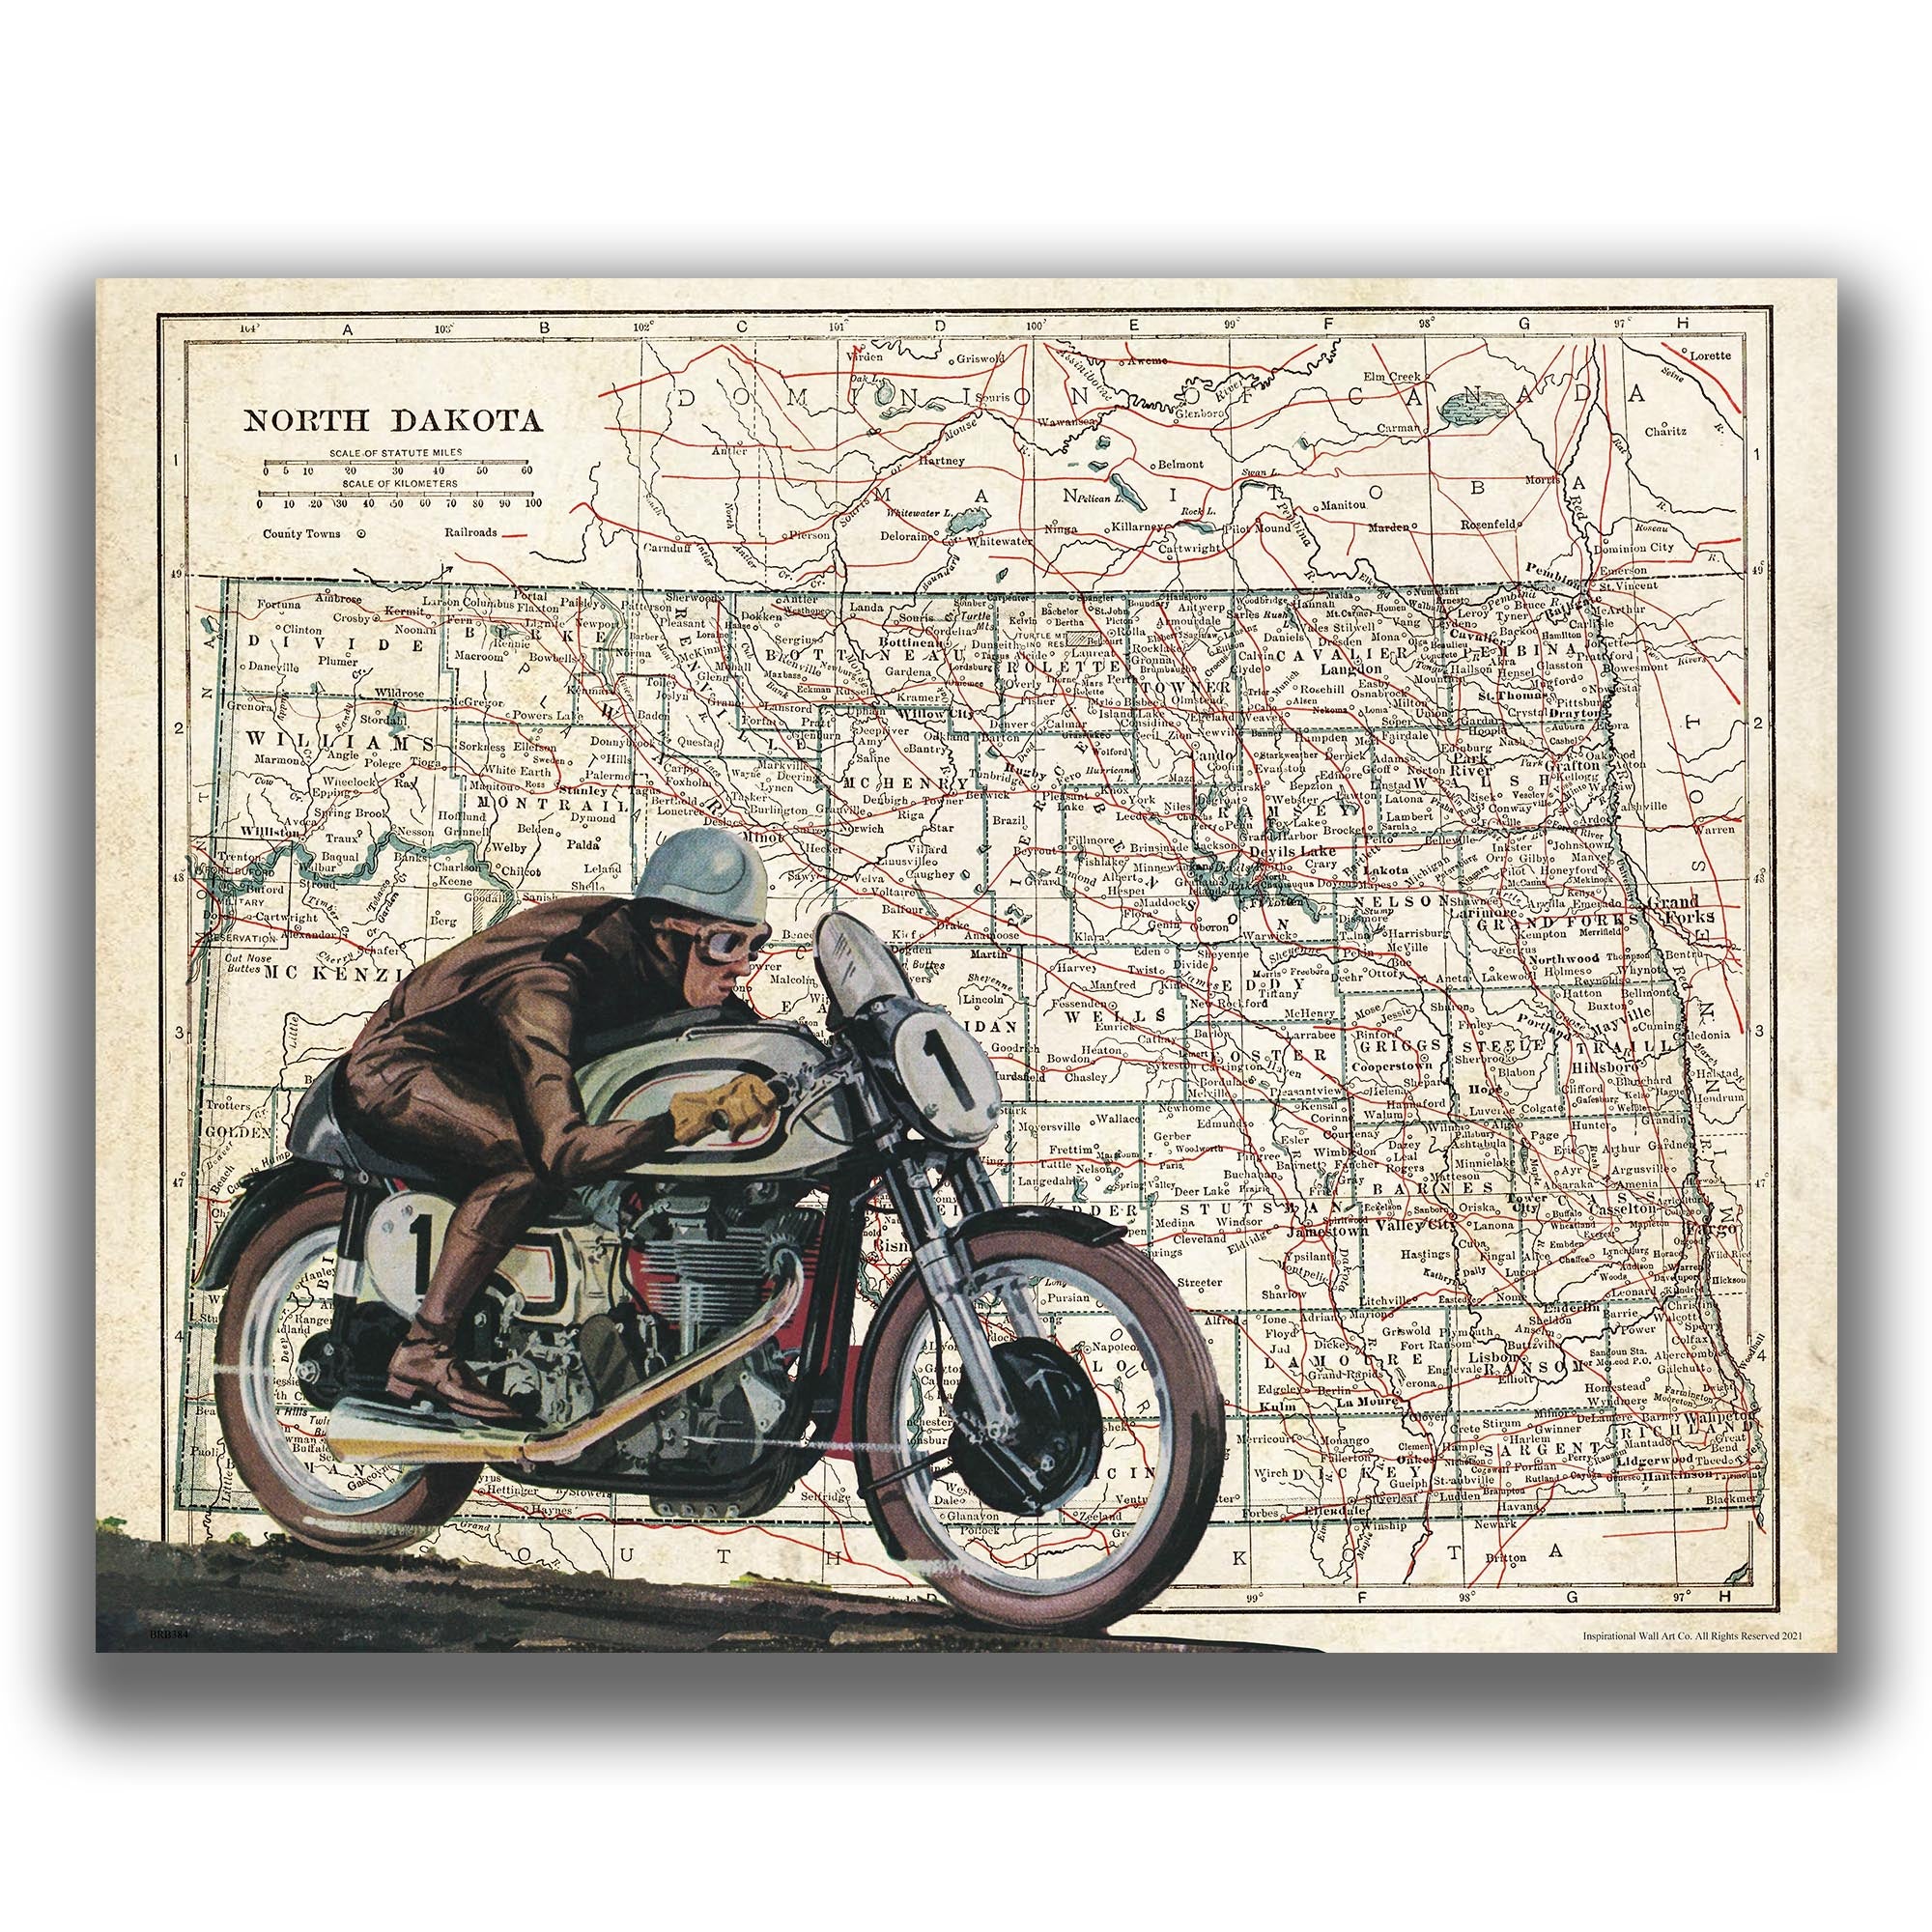 North Dakota - Motorcycle Poster